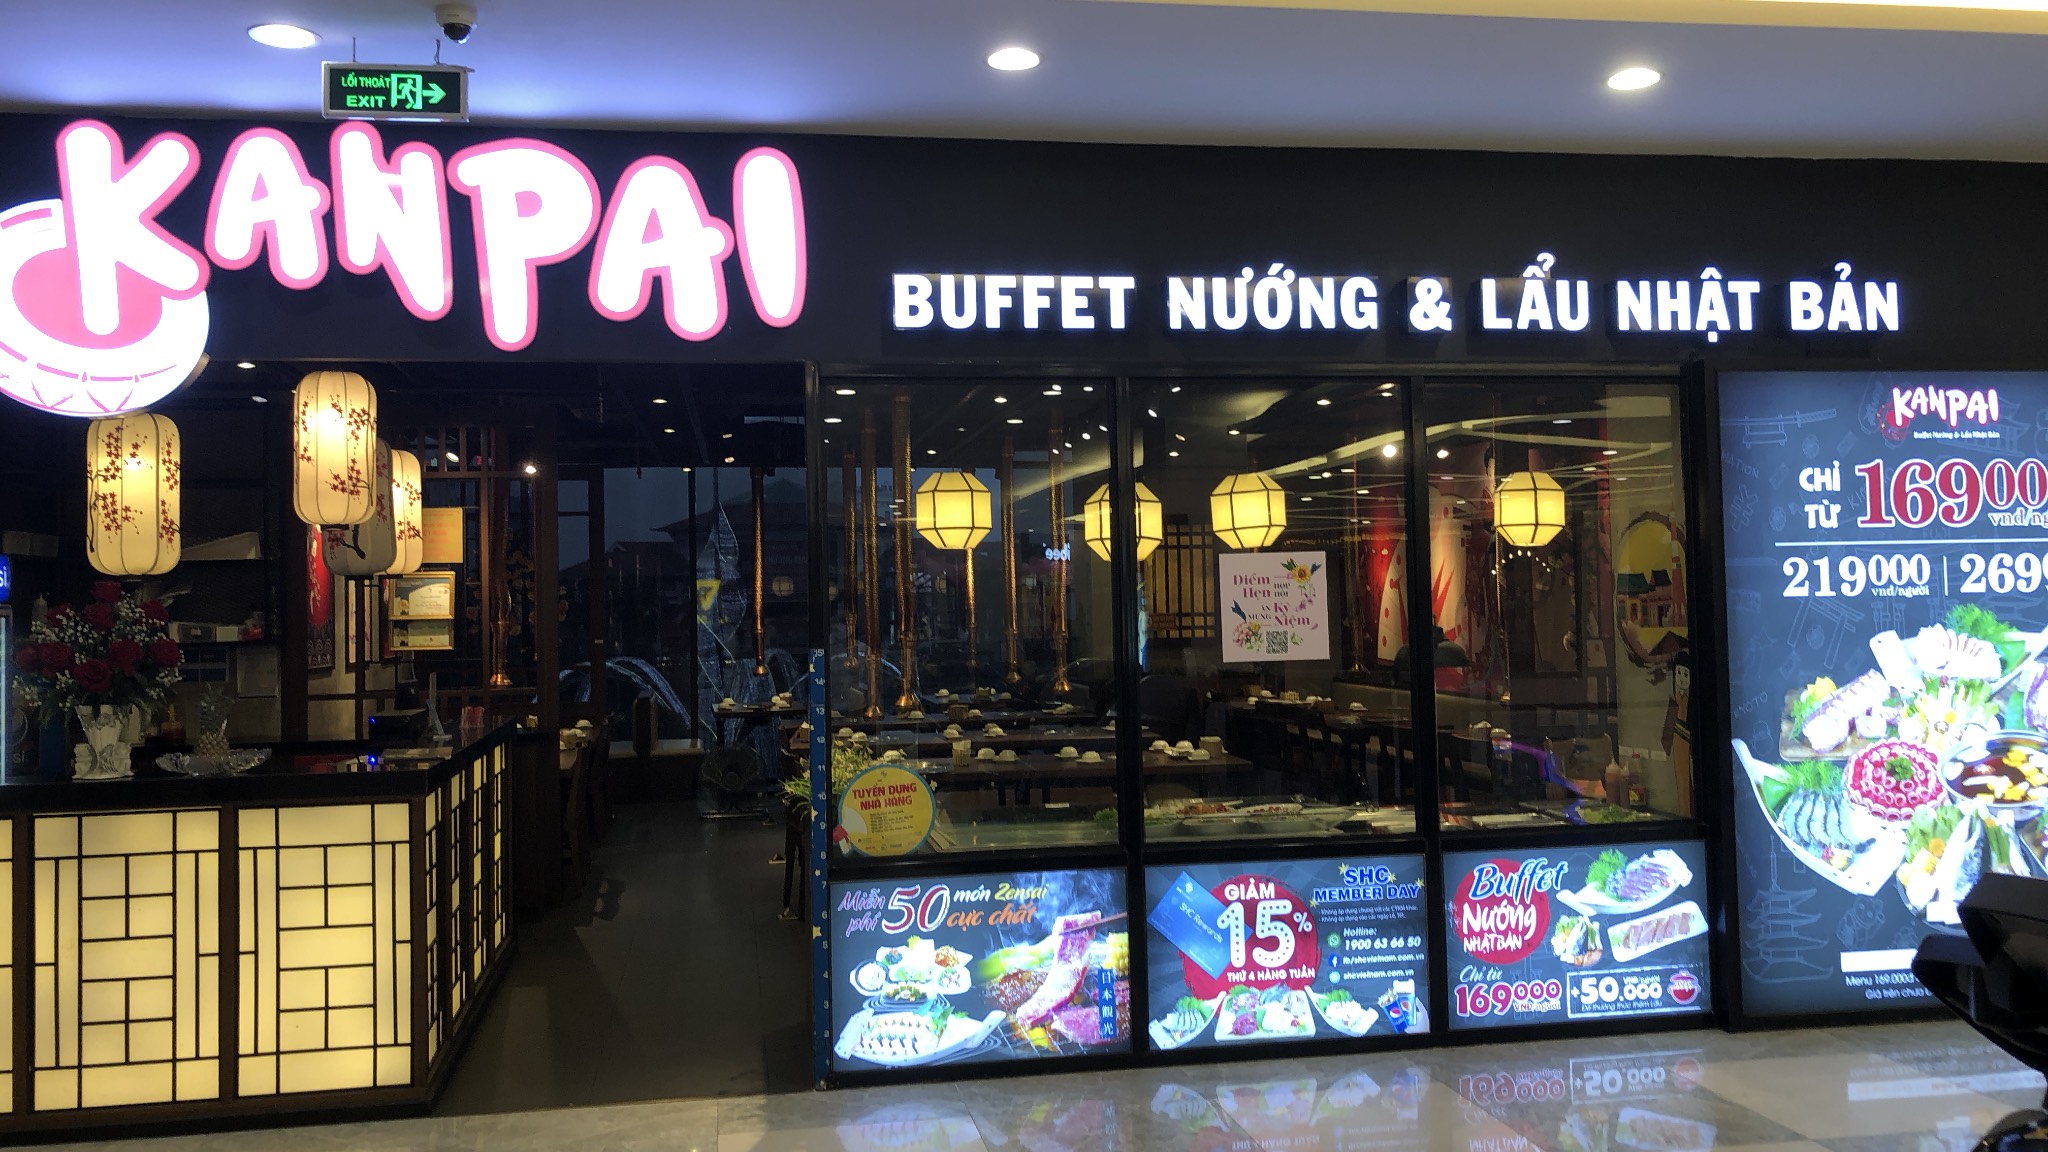 Buffet lẩu nướng Kanpai có mặt tại Vincom Plaza Lý Thái 